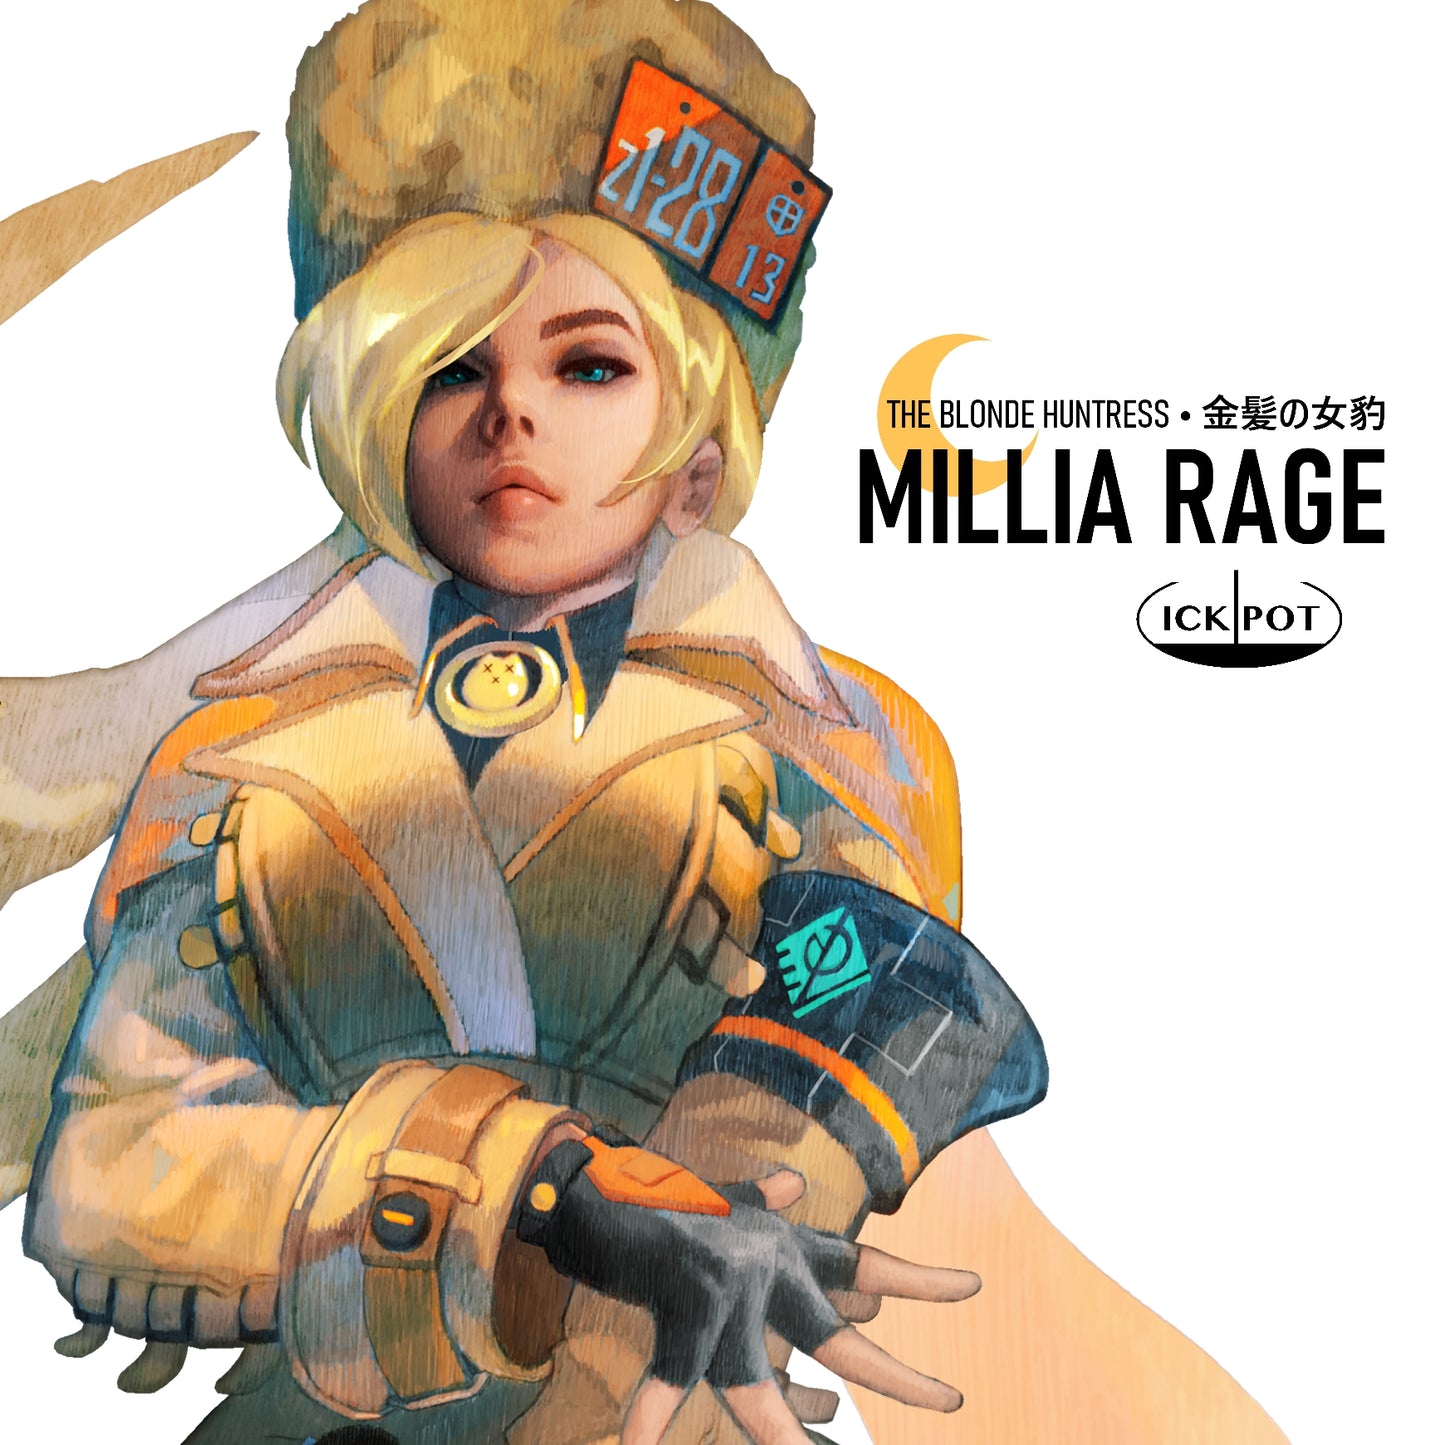 Millia Rage